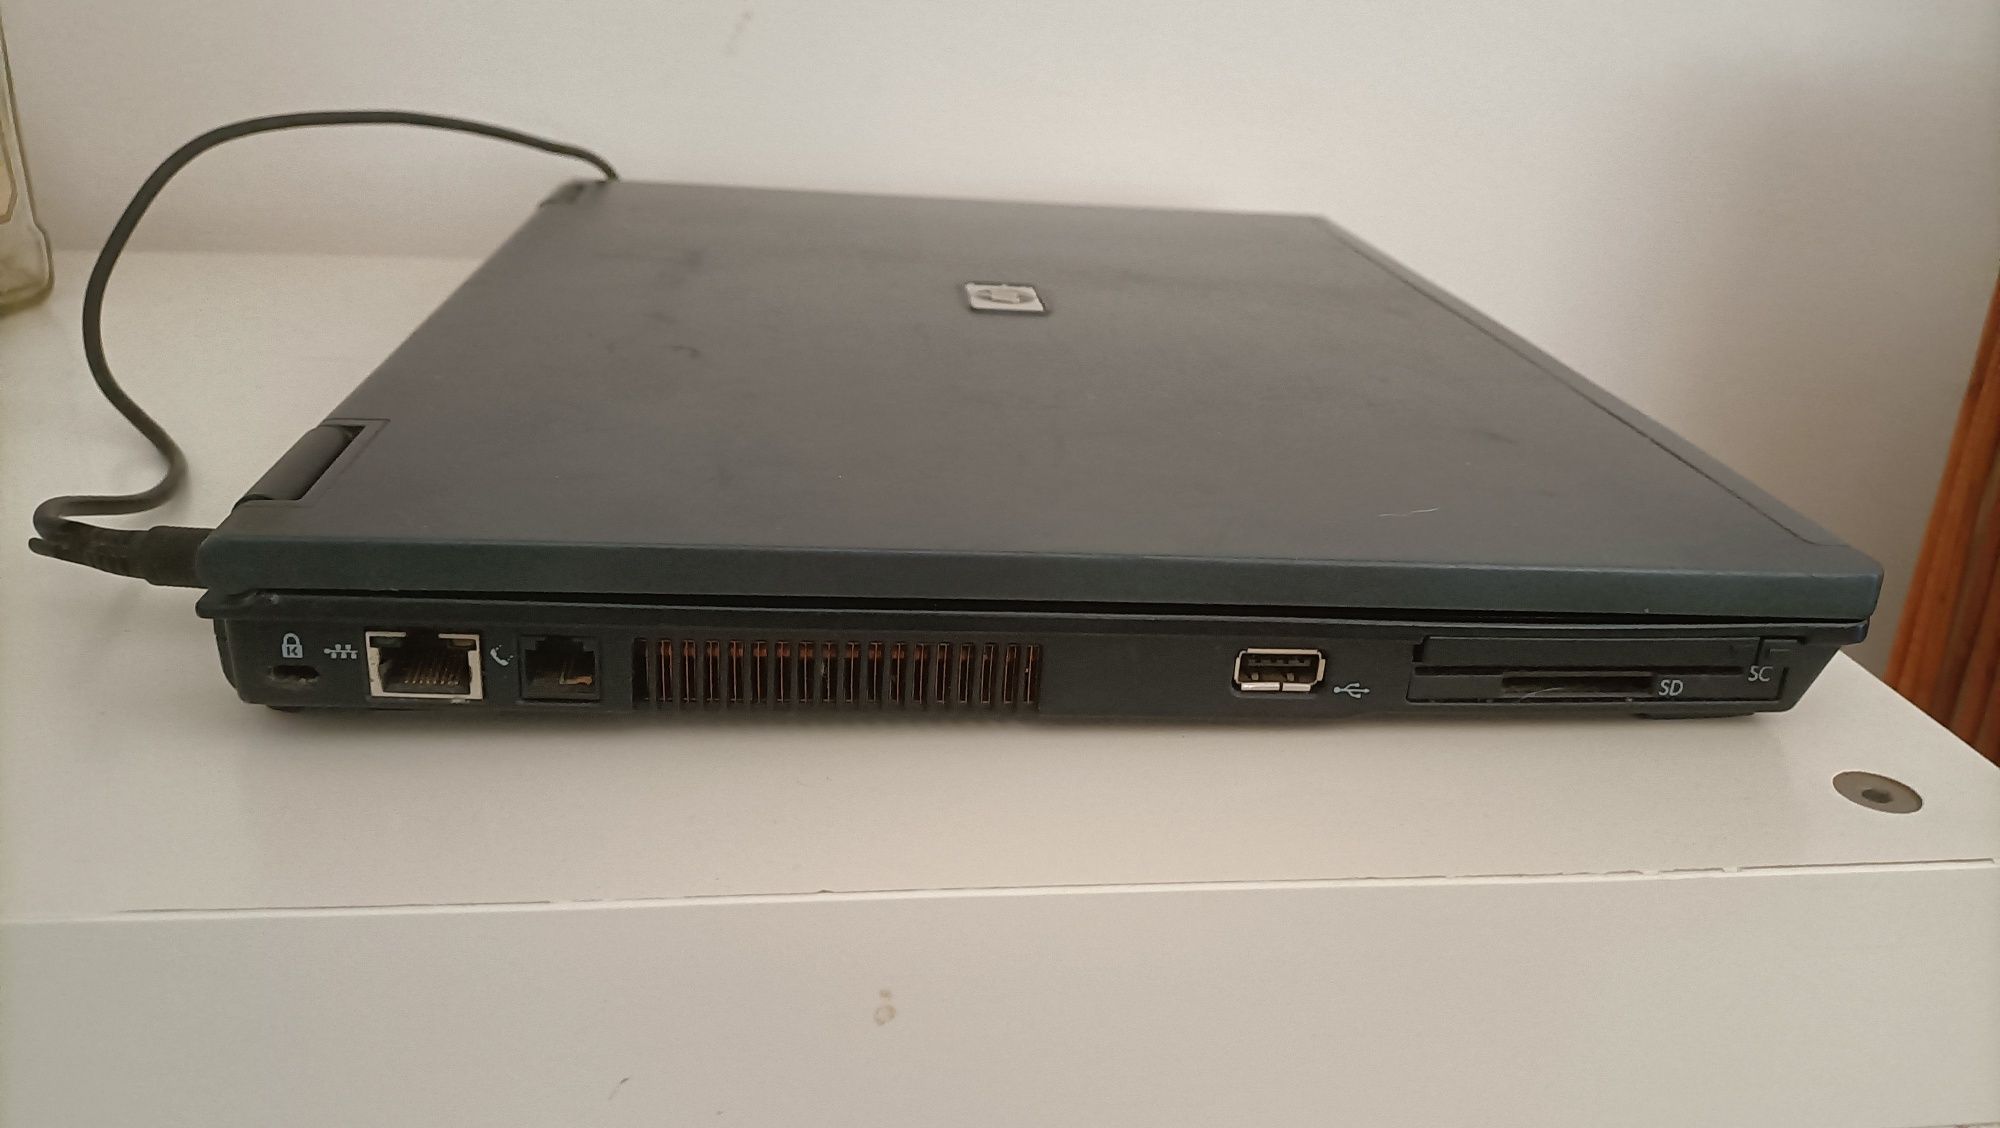 HP Compaq (model: nc6220)